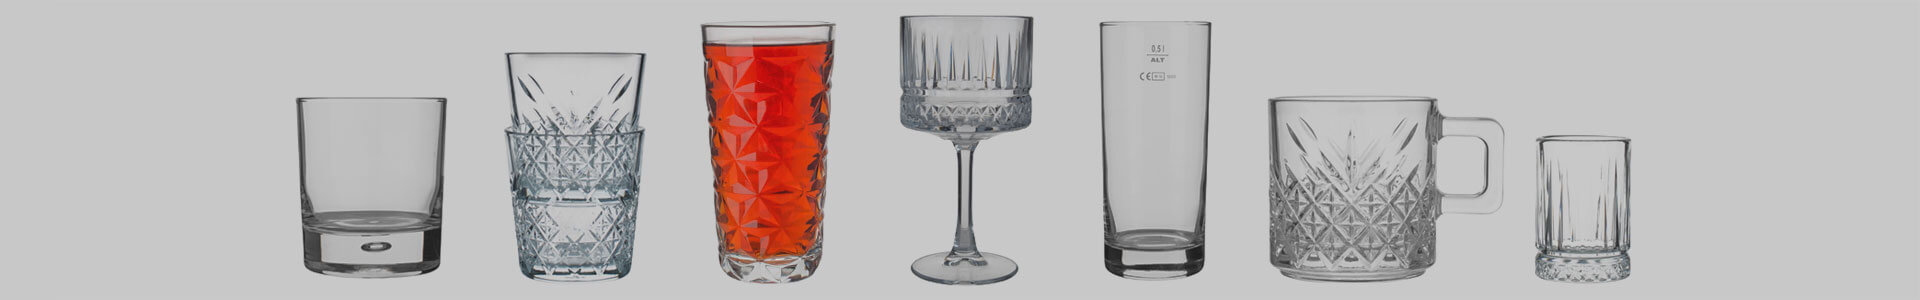 Verschiedene Gläser des Herstellers Pasabahce stehen nebeneinander.